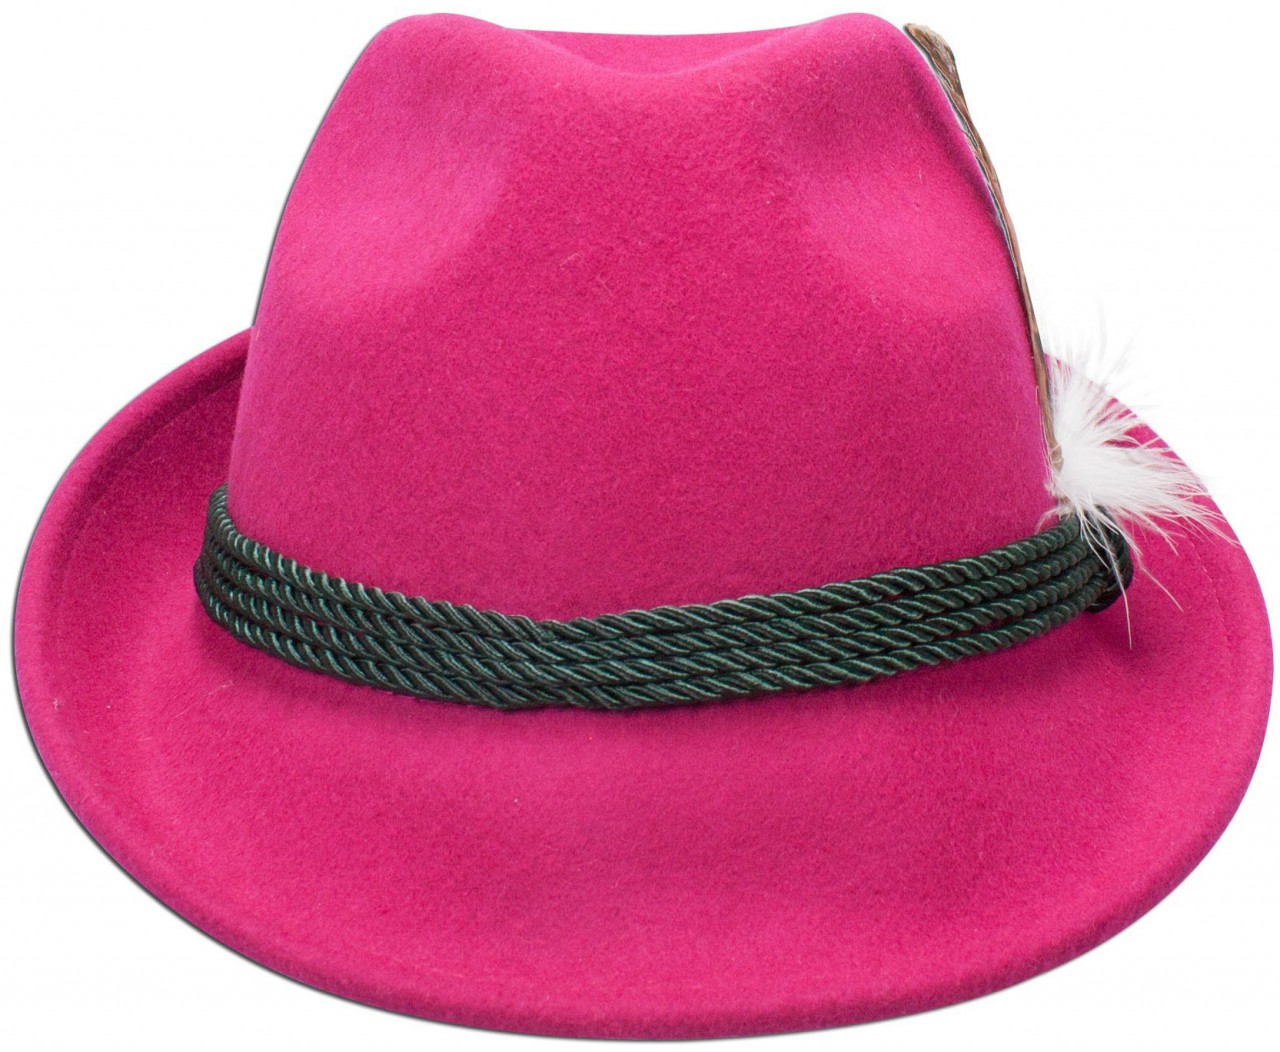 Aperçu: Chapeau en feutre avec plume rose vif